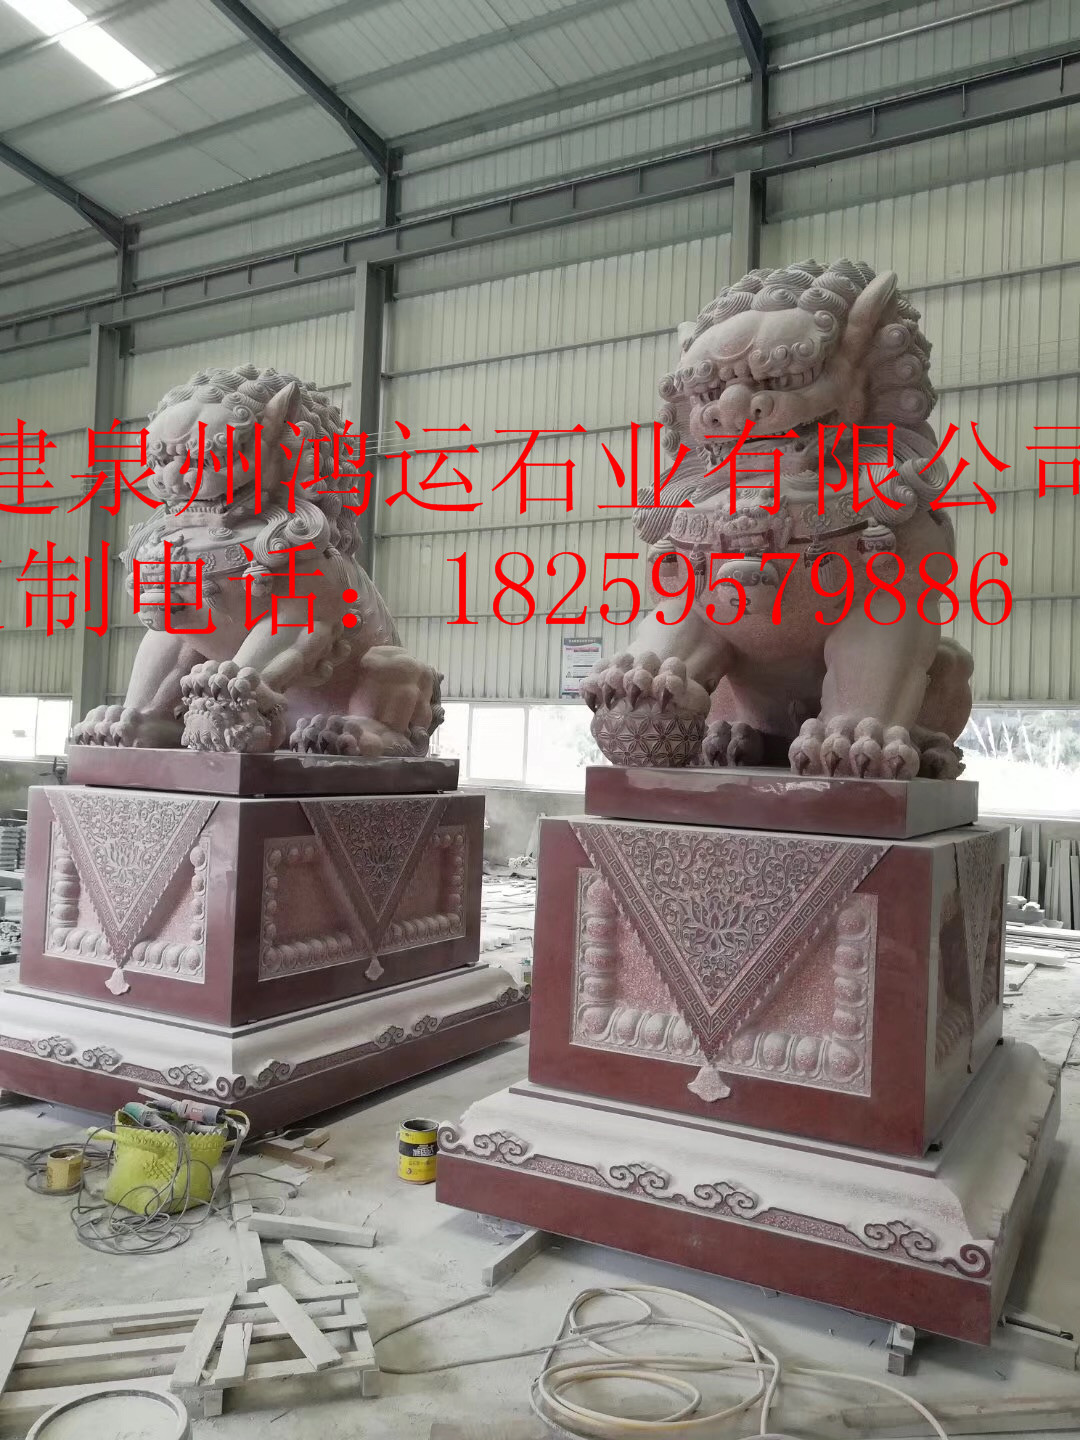 印度红石狮子，印度红石雕大象，印度红石鼓